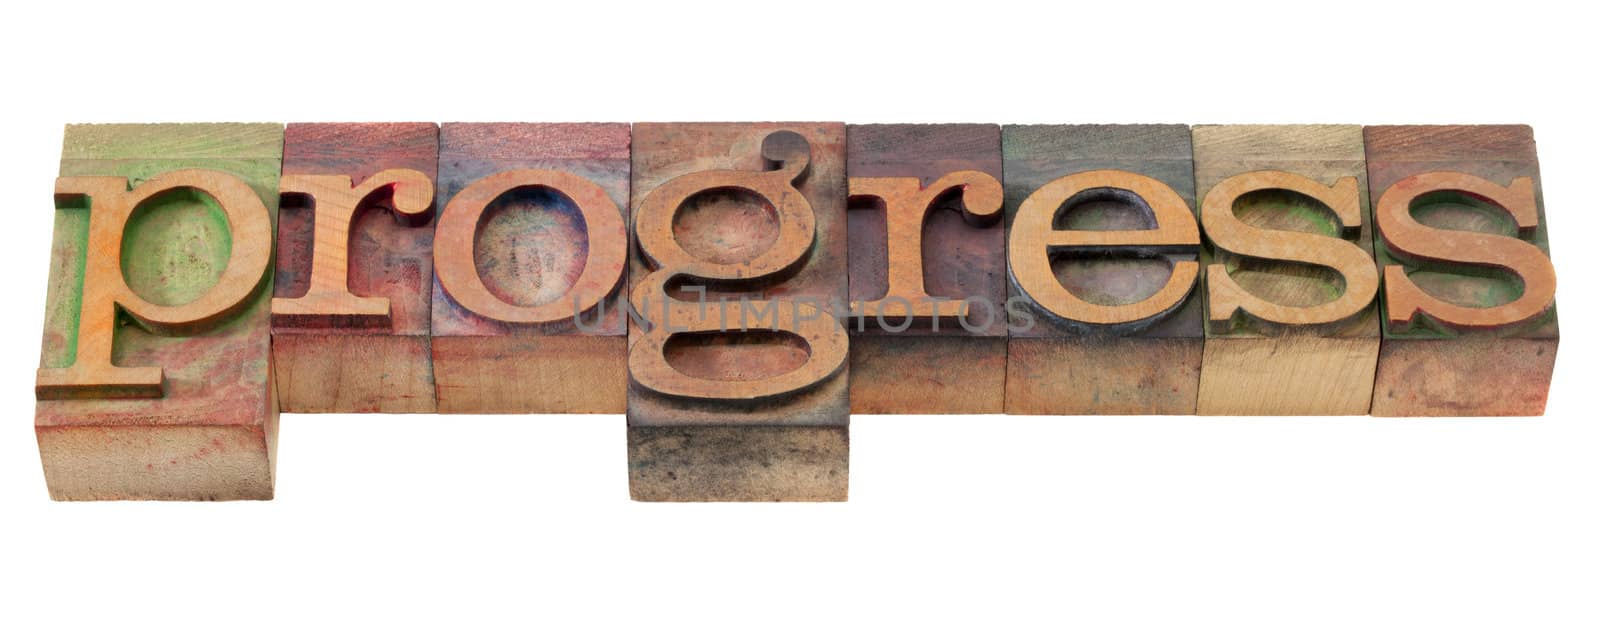 progress - word in old letterpress type by PixelsAway